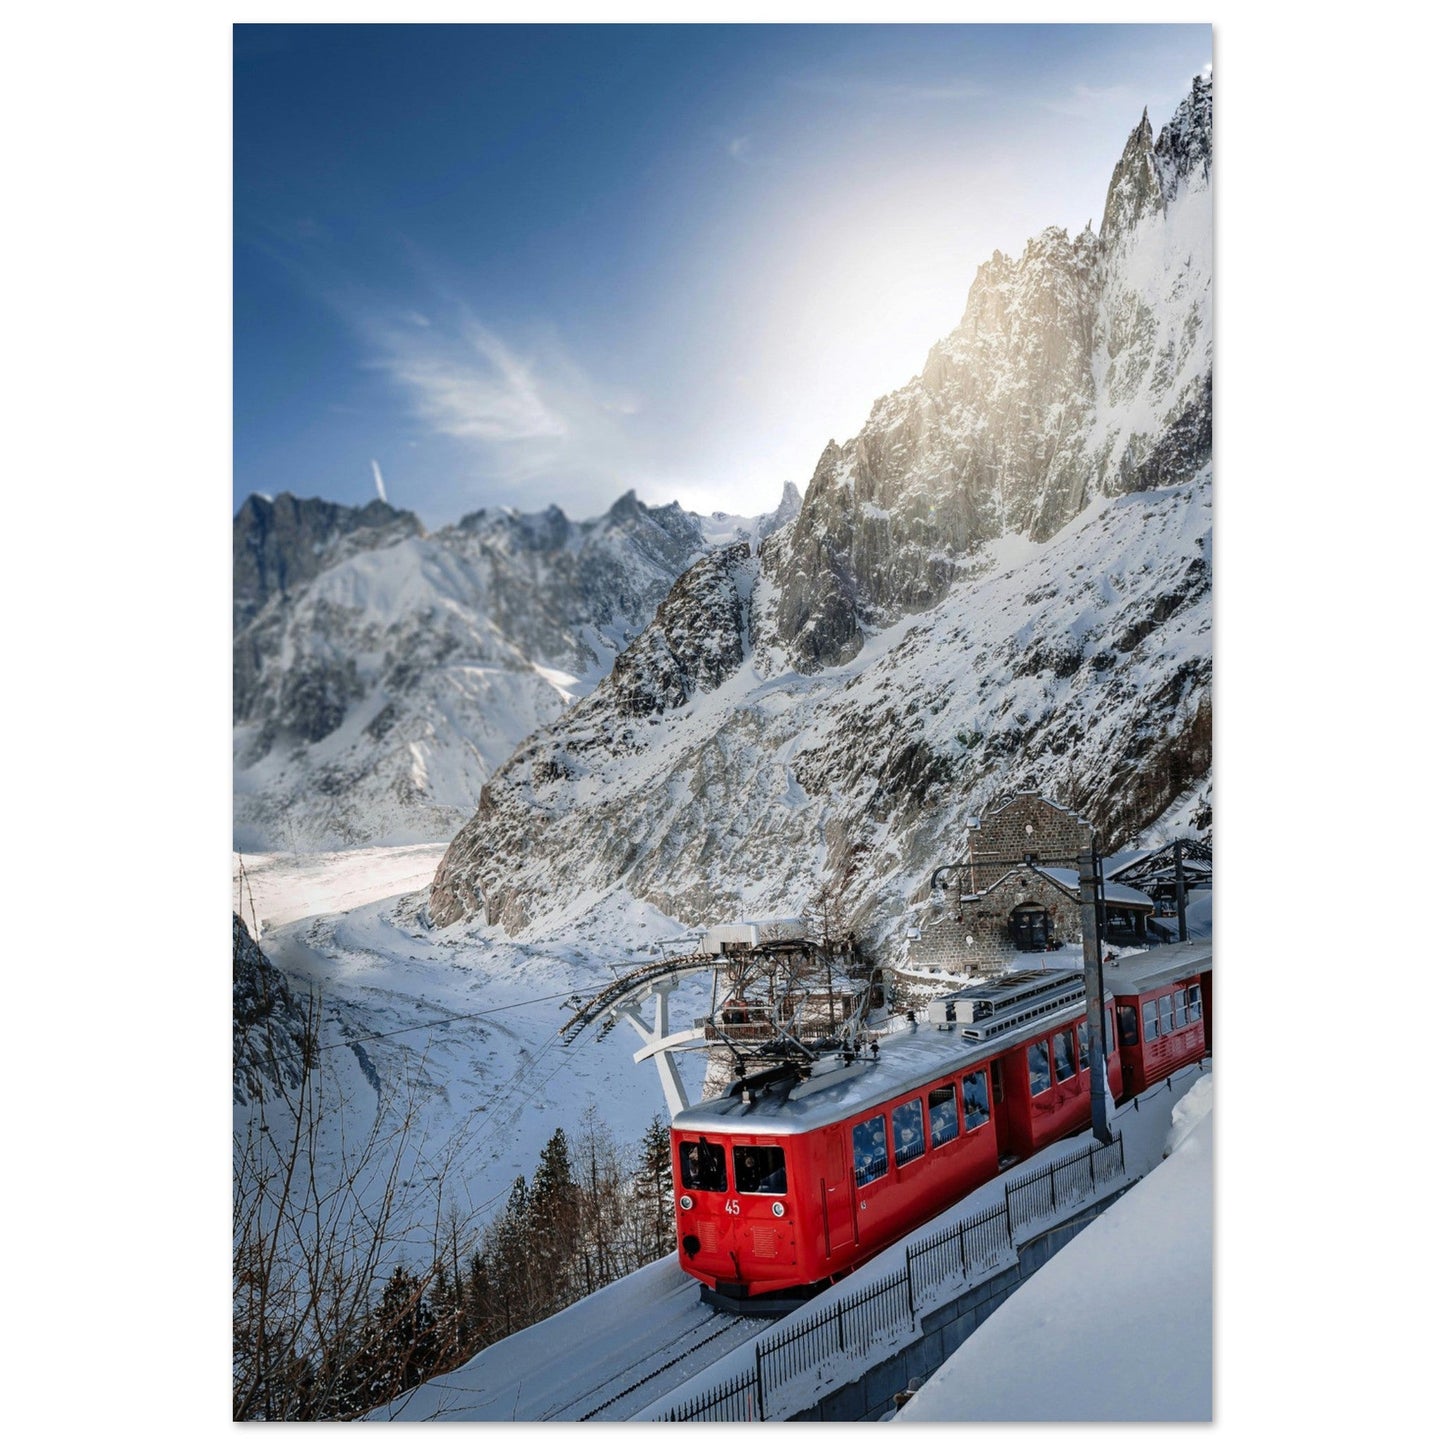 Vente Photo du train Montenvers Mer de Glace, Chamonix Mont-Blanc - Tableau photo alu montagne